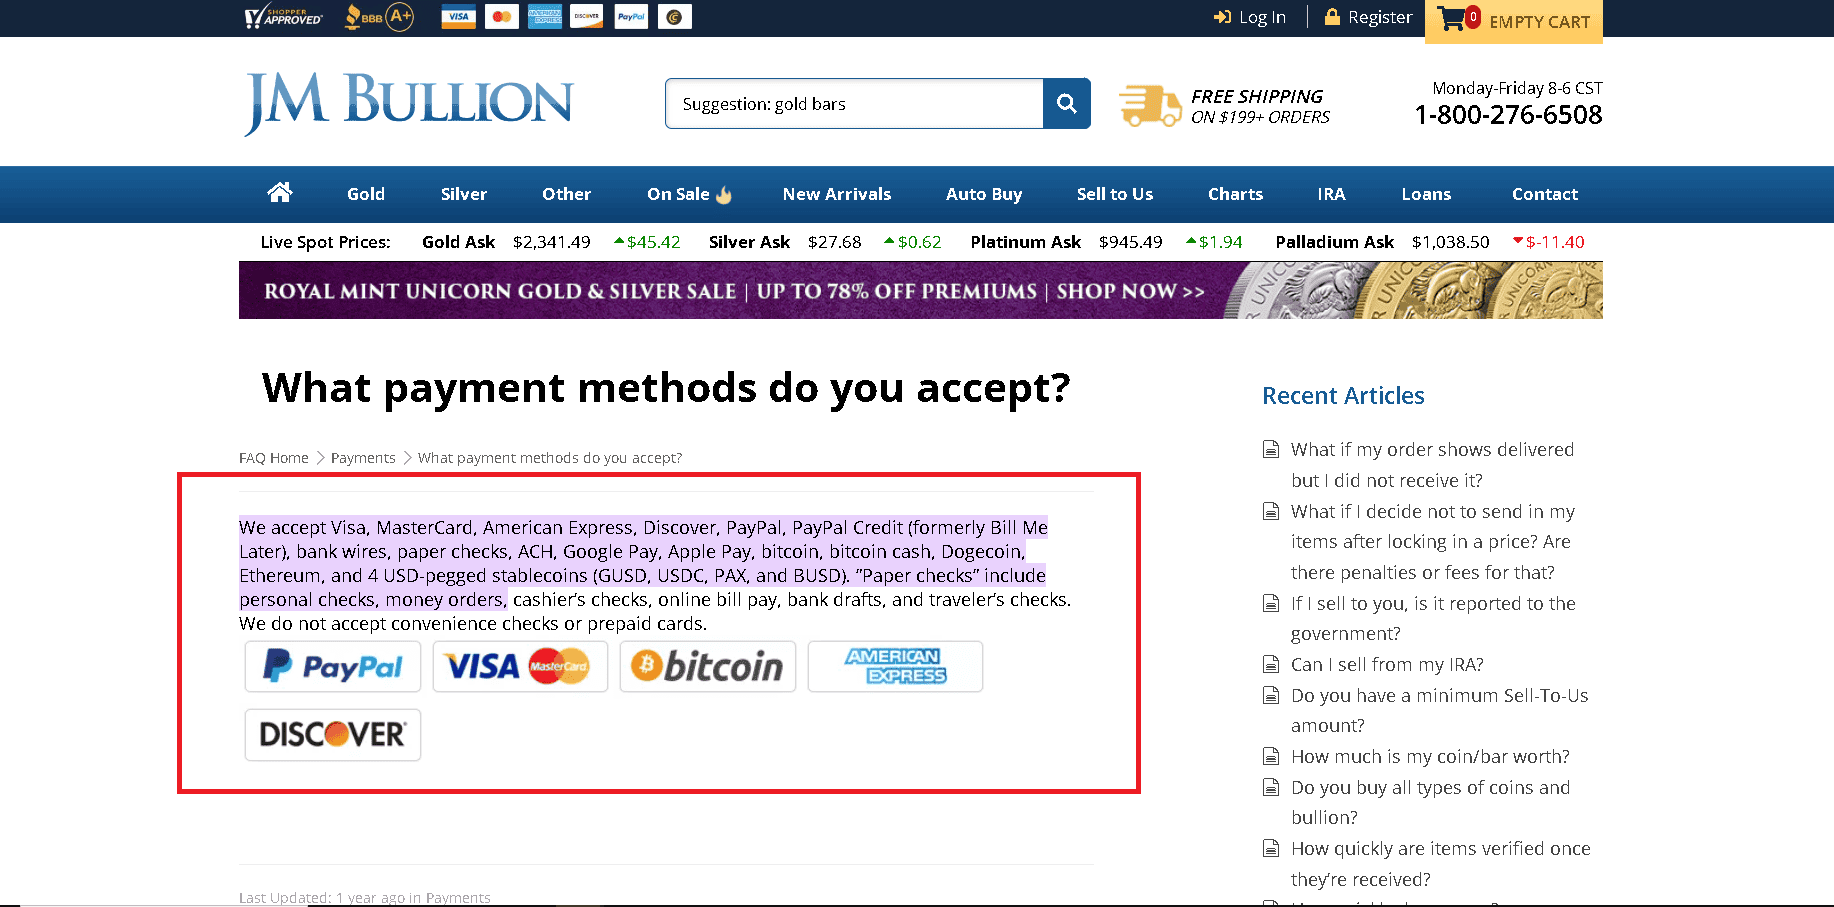 JM Bullion accepted payment methods